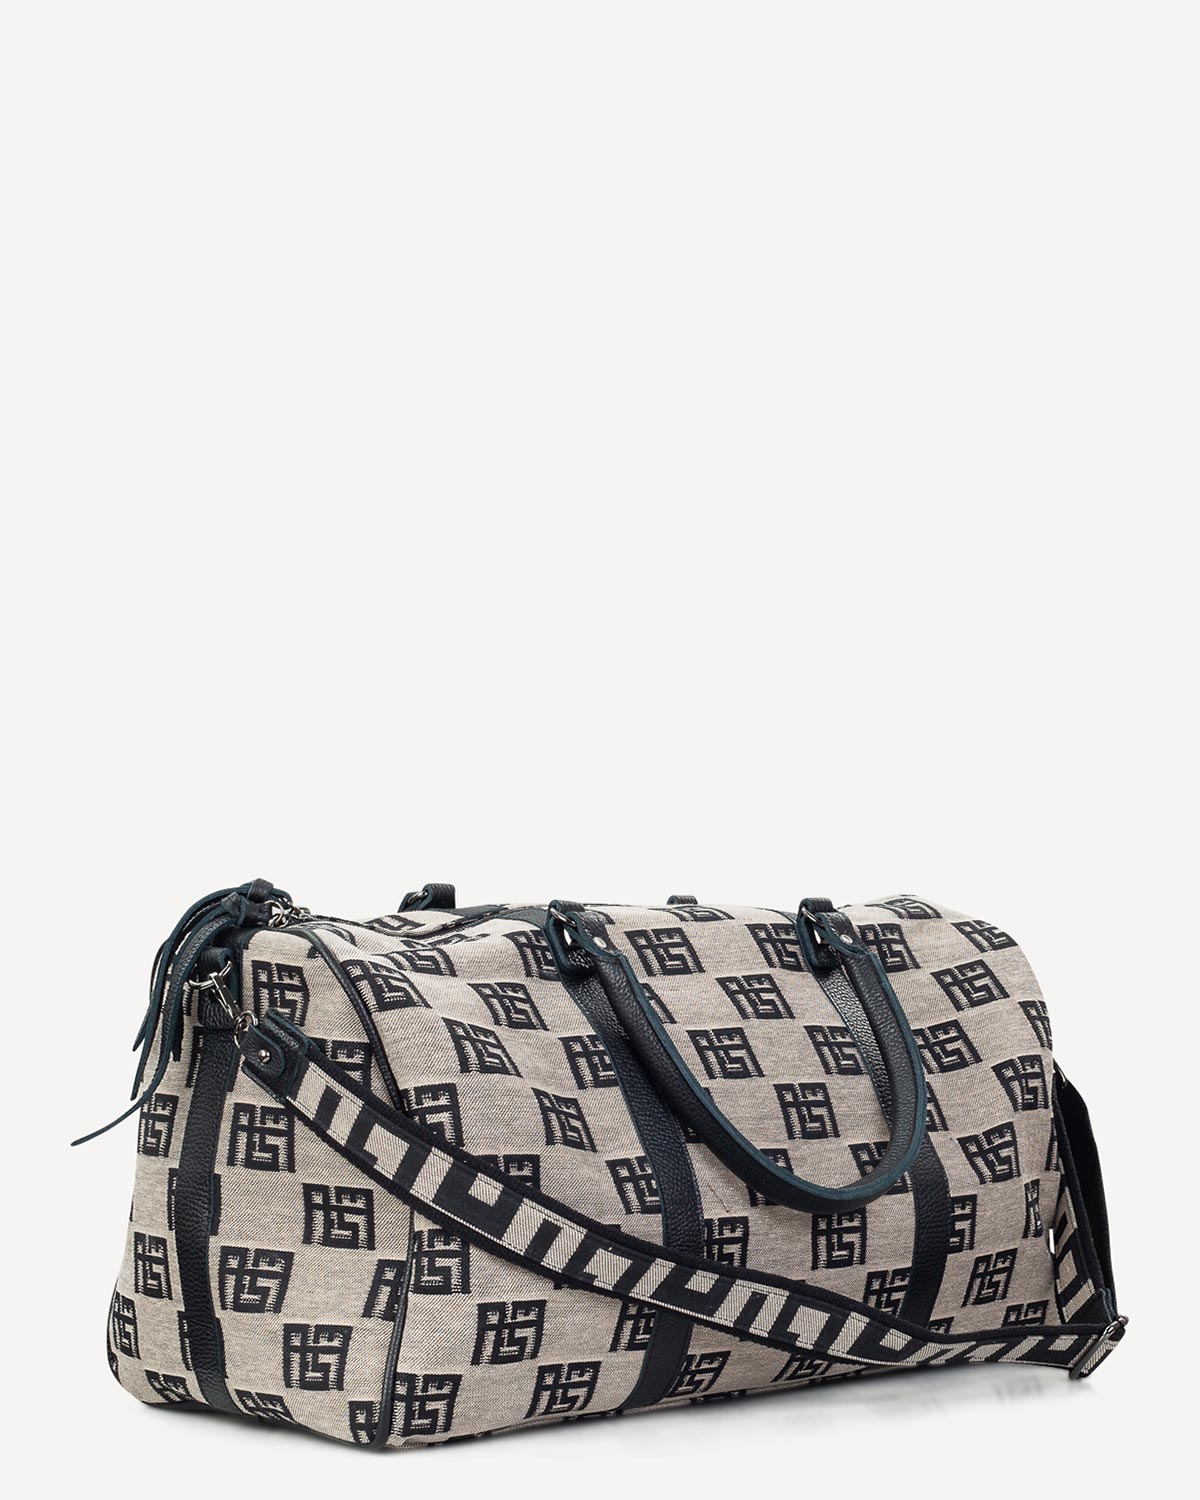 Γυναίκα - Travel Luggage - Ames Bags Μπεζ